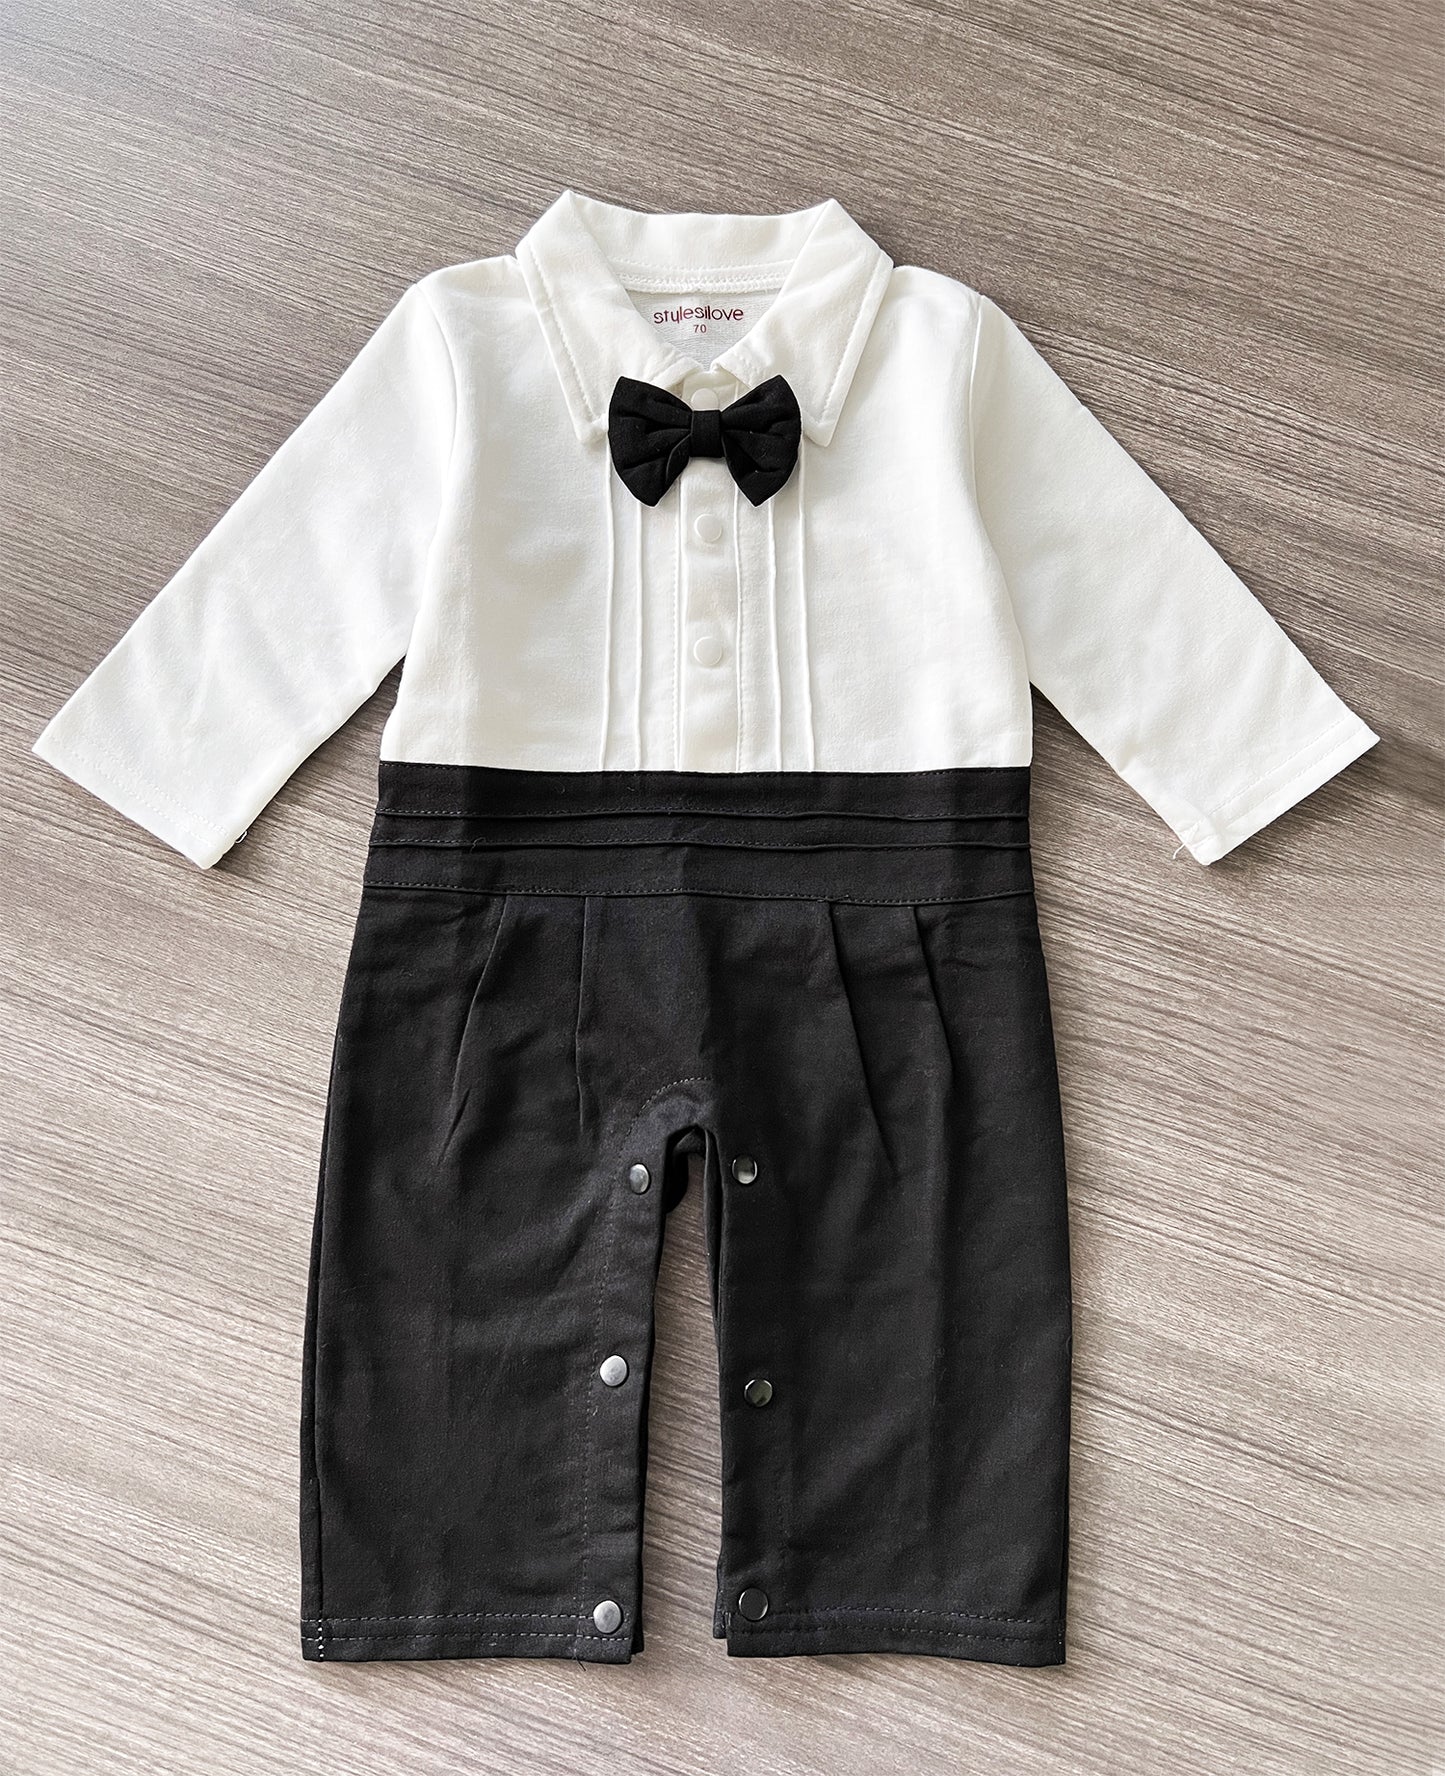 Black & White Tuxedo Romper & Jacket 2pcs Baby formal Wear